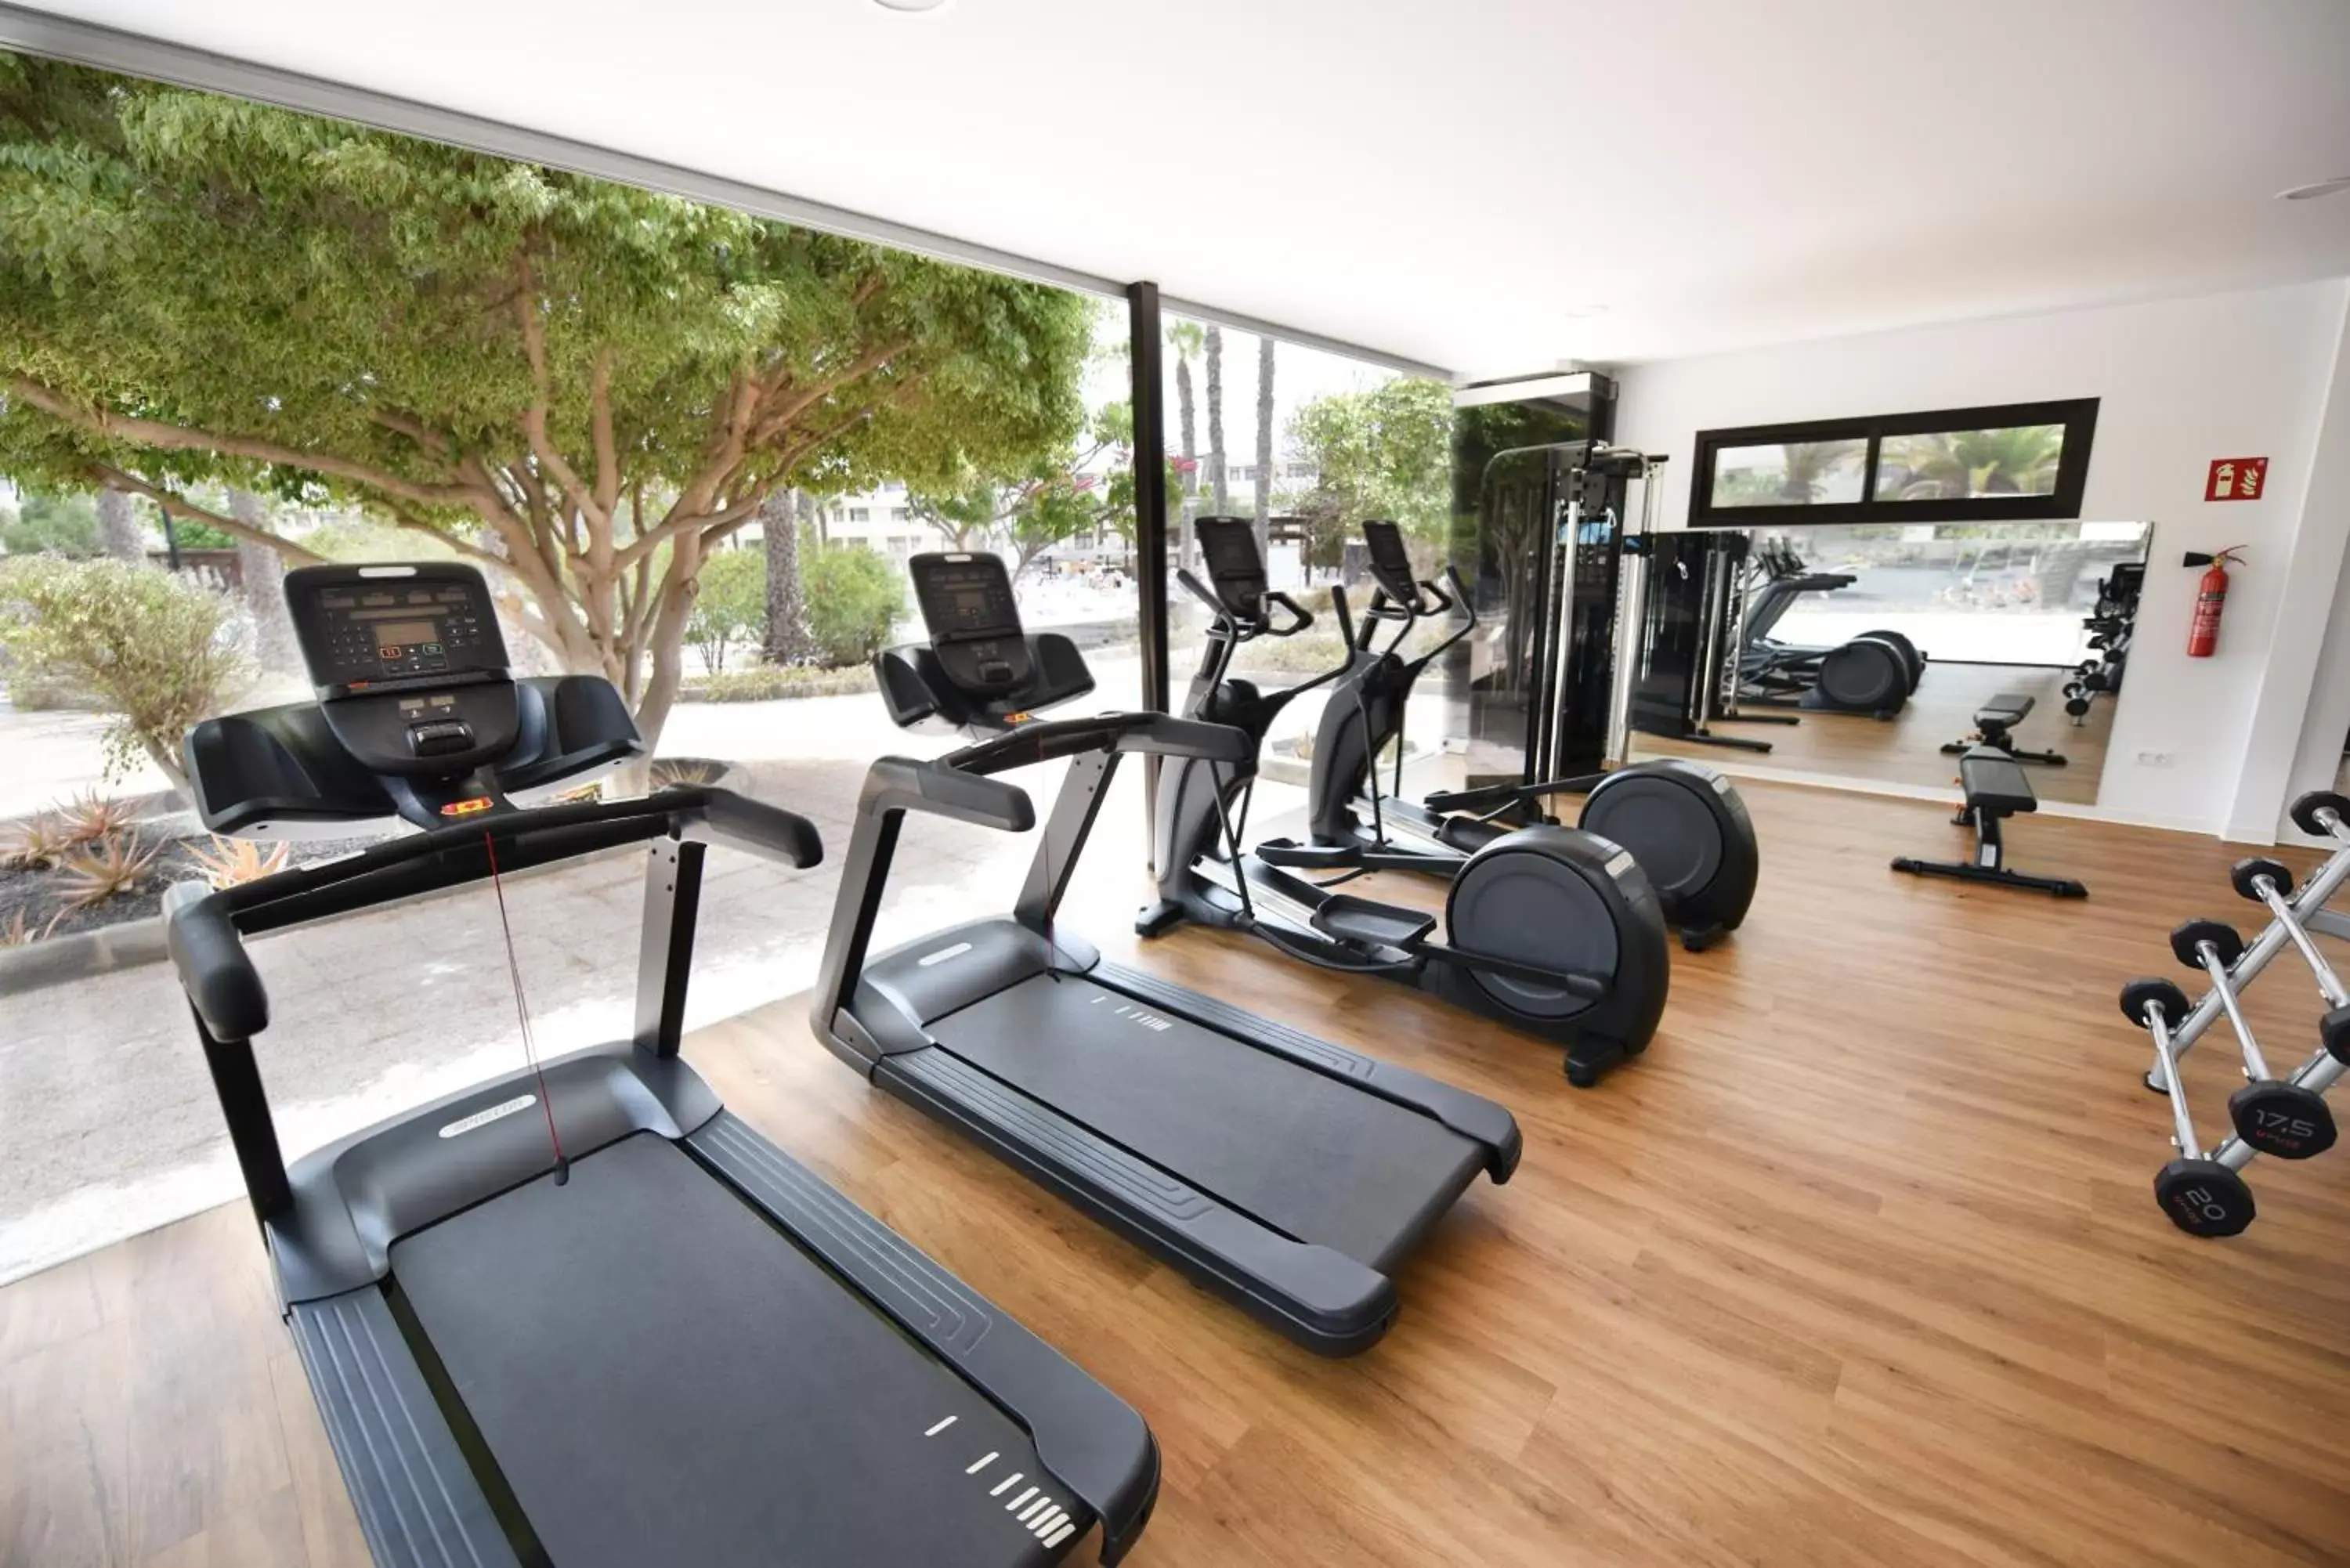 Fitness centre/facilities, Fitness Center/Facilities in Los Zocos Impressive Lanzarote